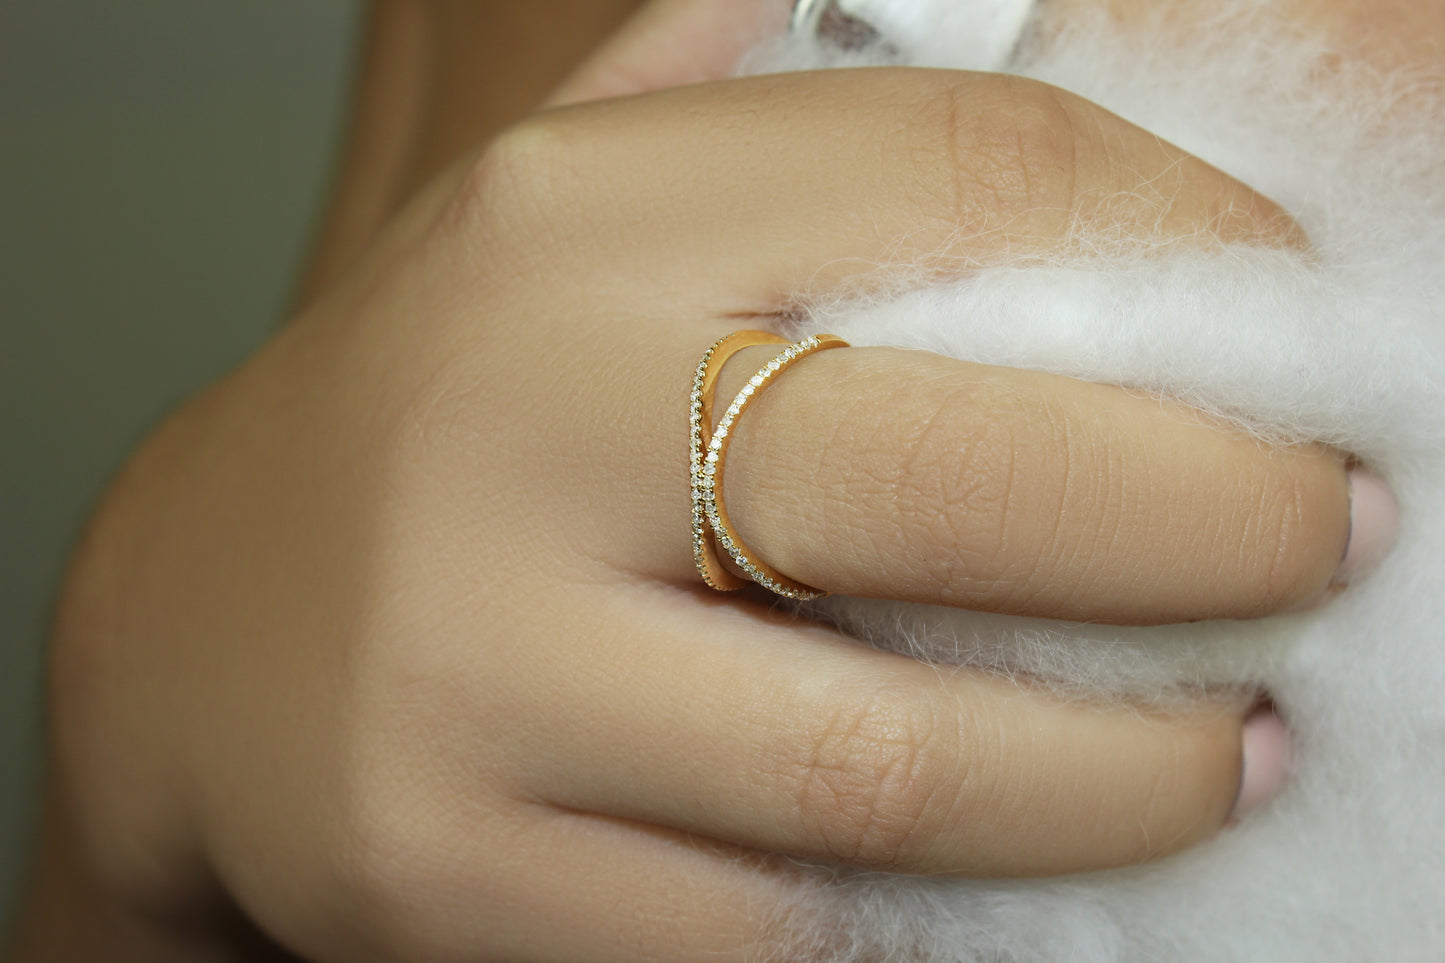 Belantina X Style Diamond Band Ring In 14k Gold 1/5 Carat